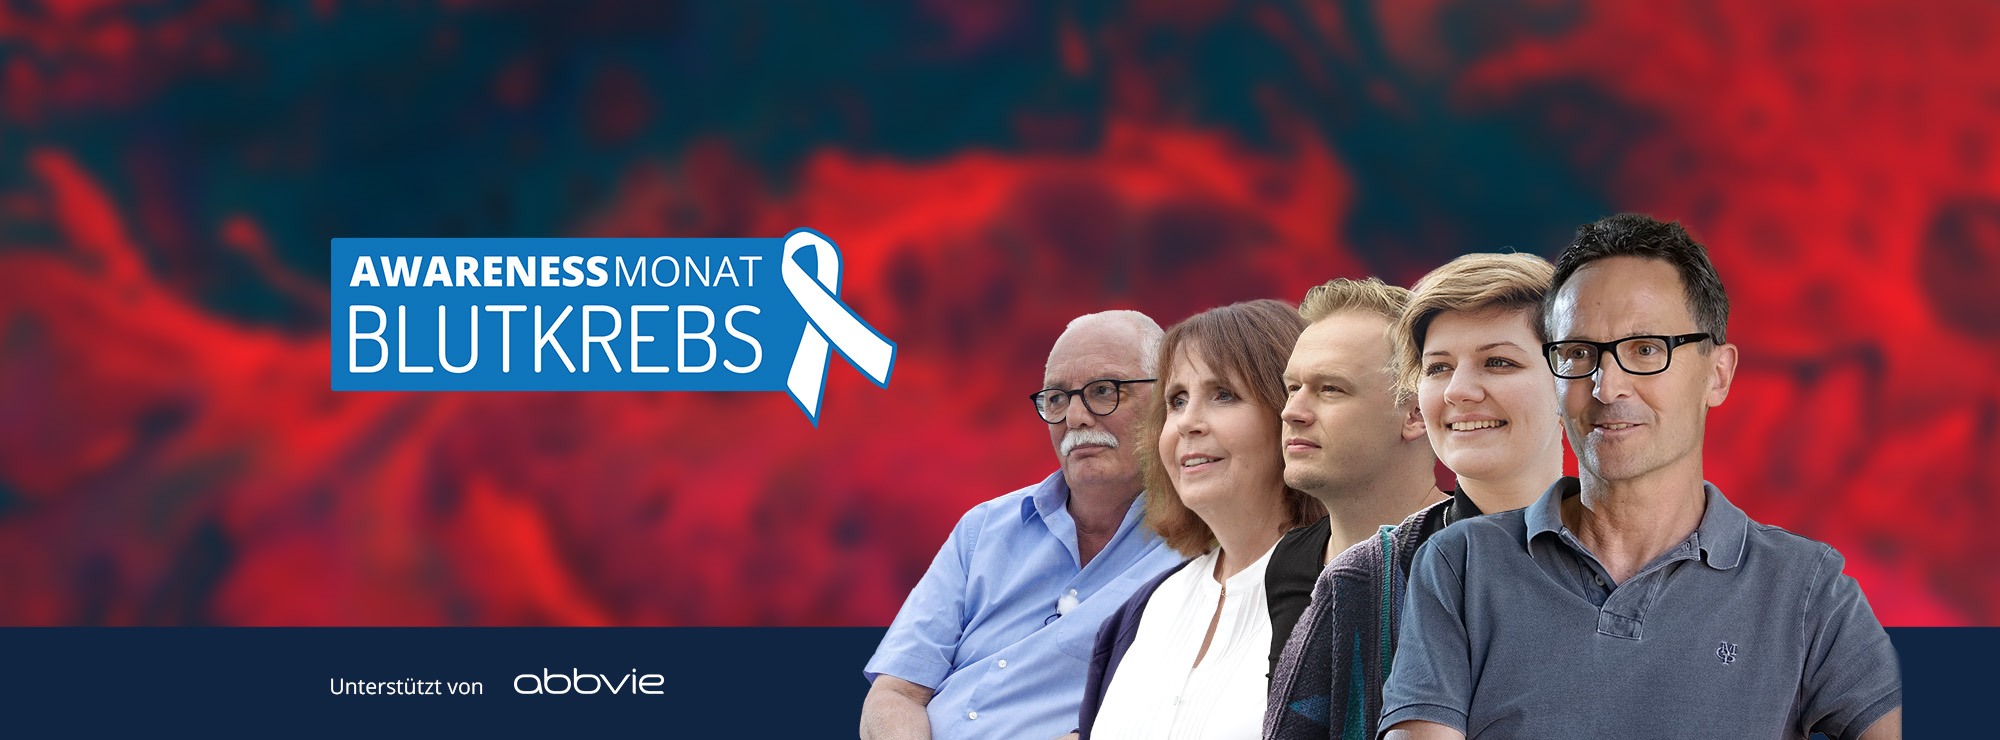 Vier Personen stehen gestaffelt nebeneinander, es sind Menschen mit Blutkrebs, daneben das Logo zum Awareness-Monat Blutkrebs im September